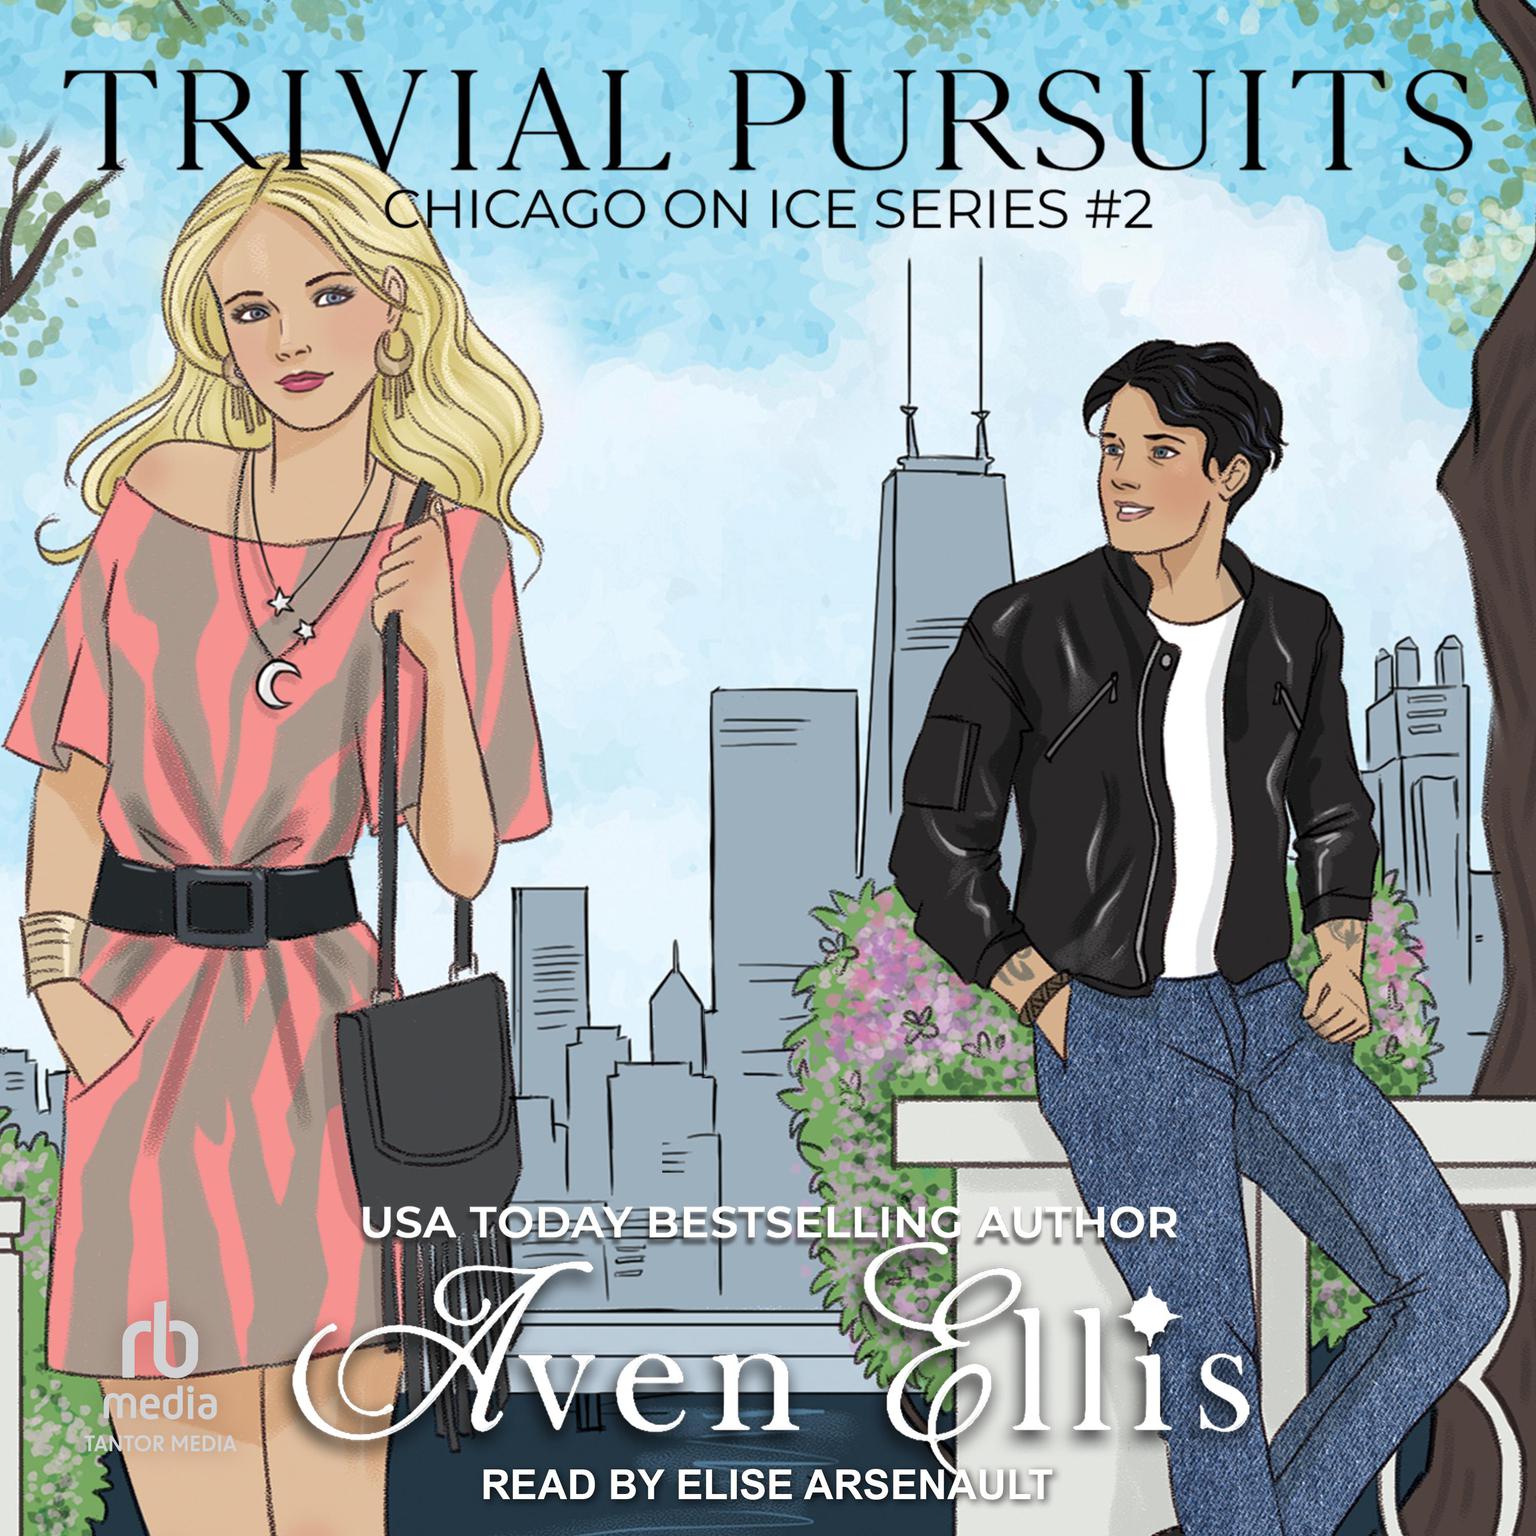 Trivial Pursuits Audiobook, by Aven Ellis